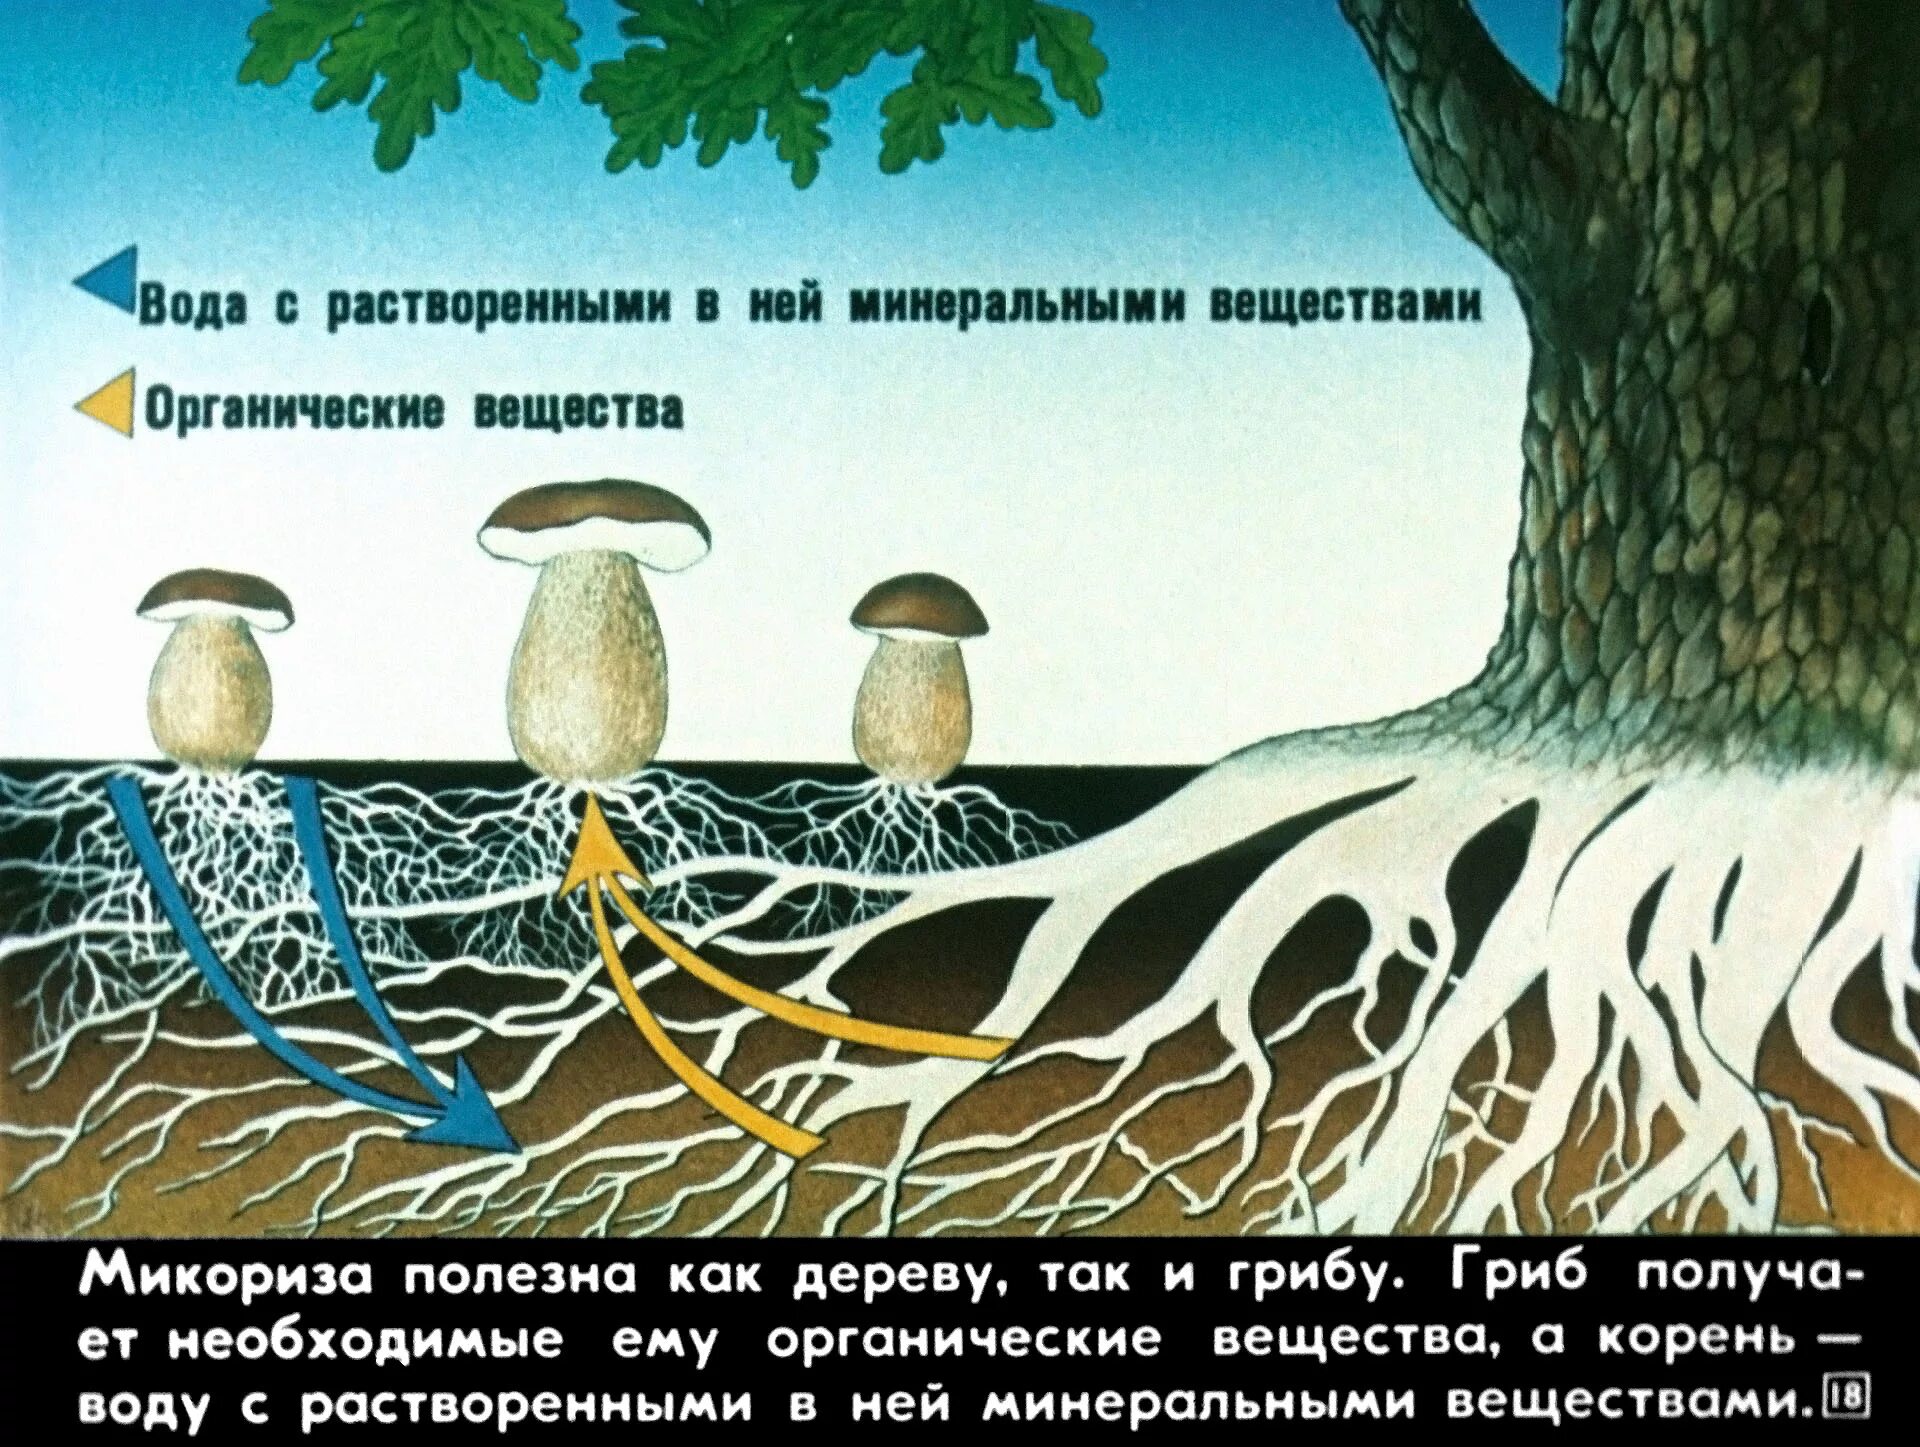 Как называется корень гриба. Схема симбиоза гриба и дерева. Микориза с грибами-симбионтами. Симбиоз гриба и дерева. Взаимосвязь грибов и деревьев.